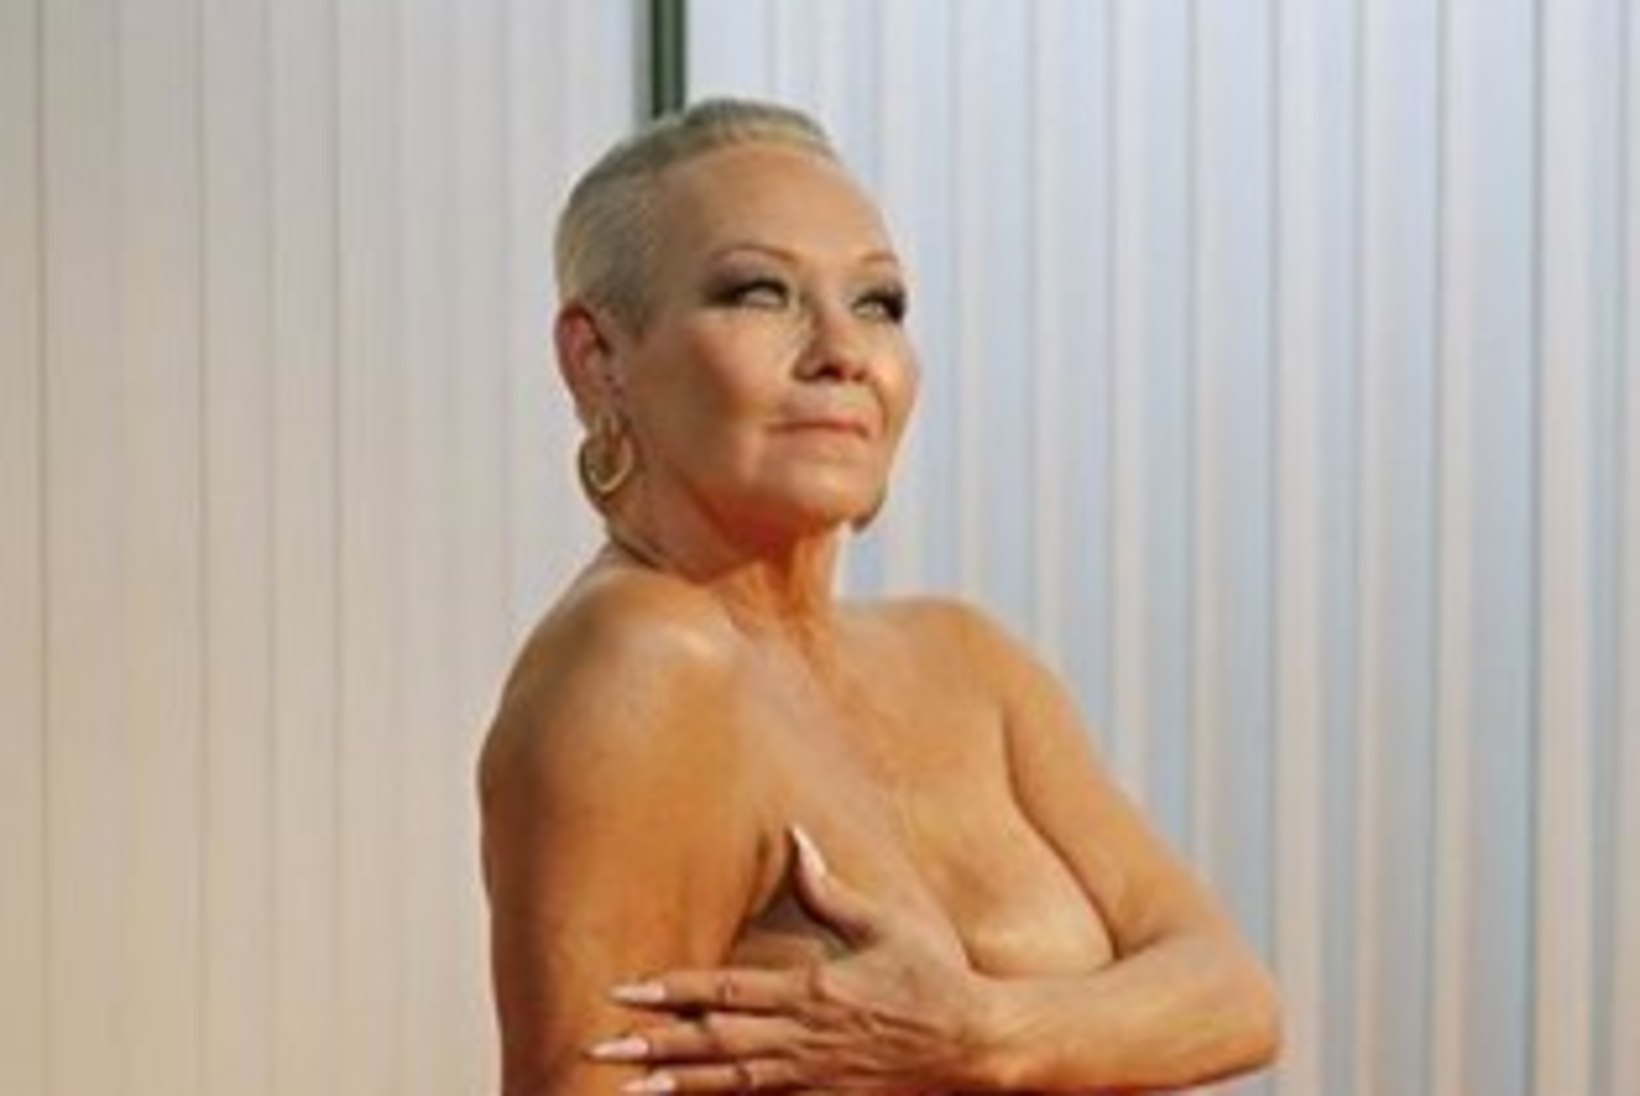 62aastane Playboy modell põhjustas sotsiaalmeedias poleemikat